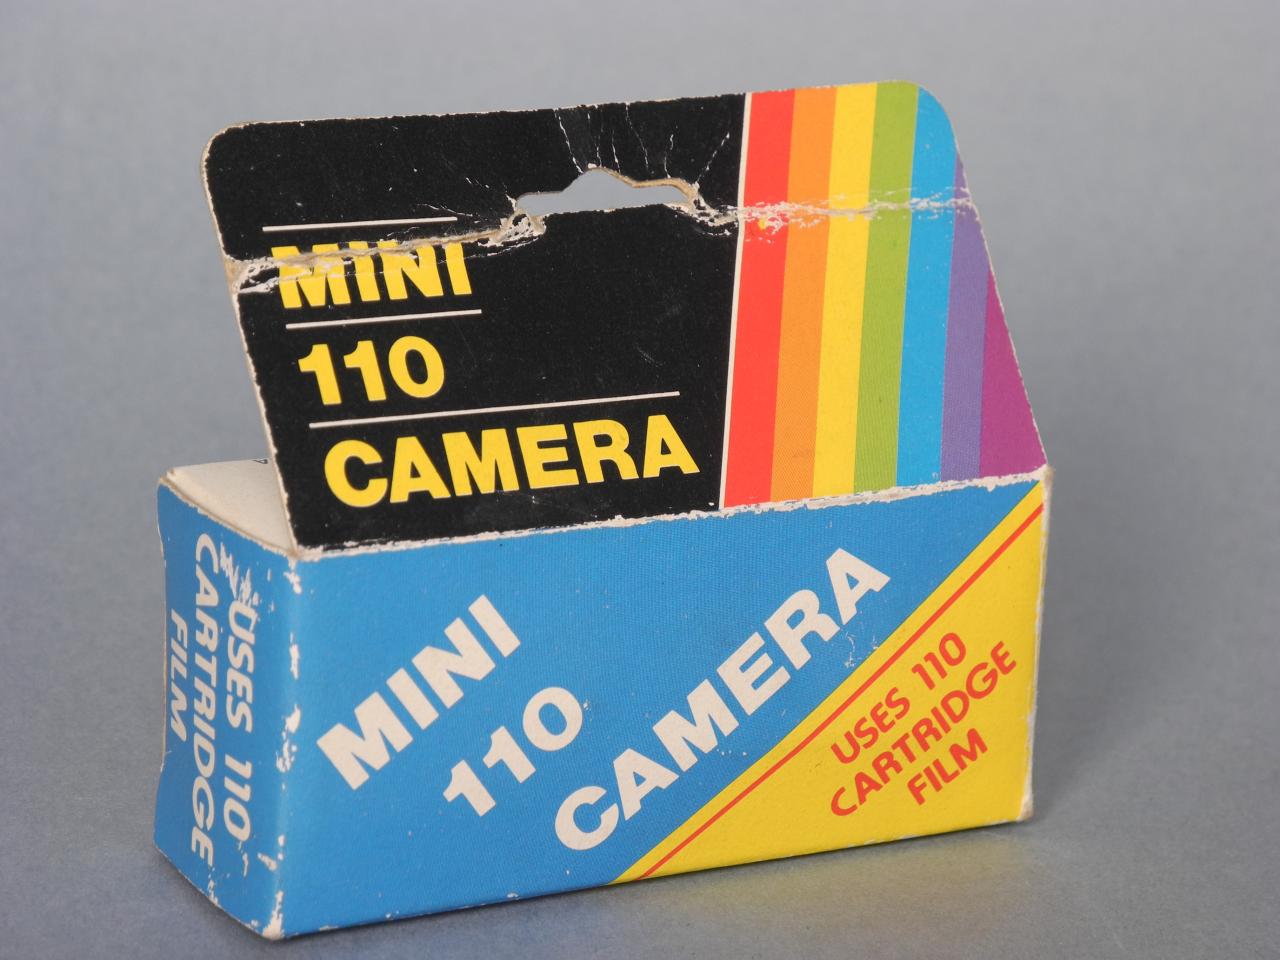 *Mini-110 Camera à l'intérieur de la boite*